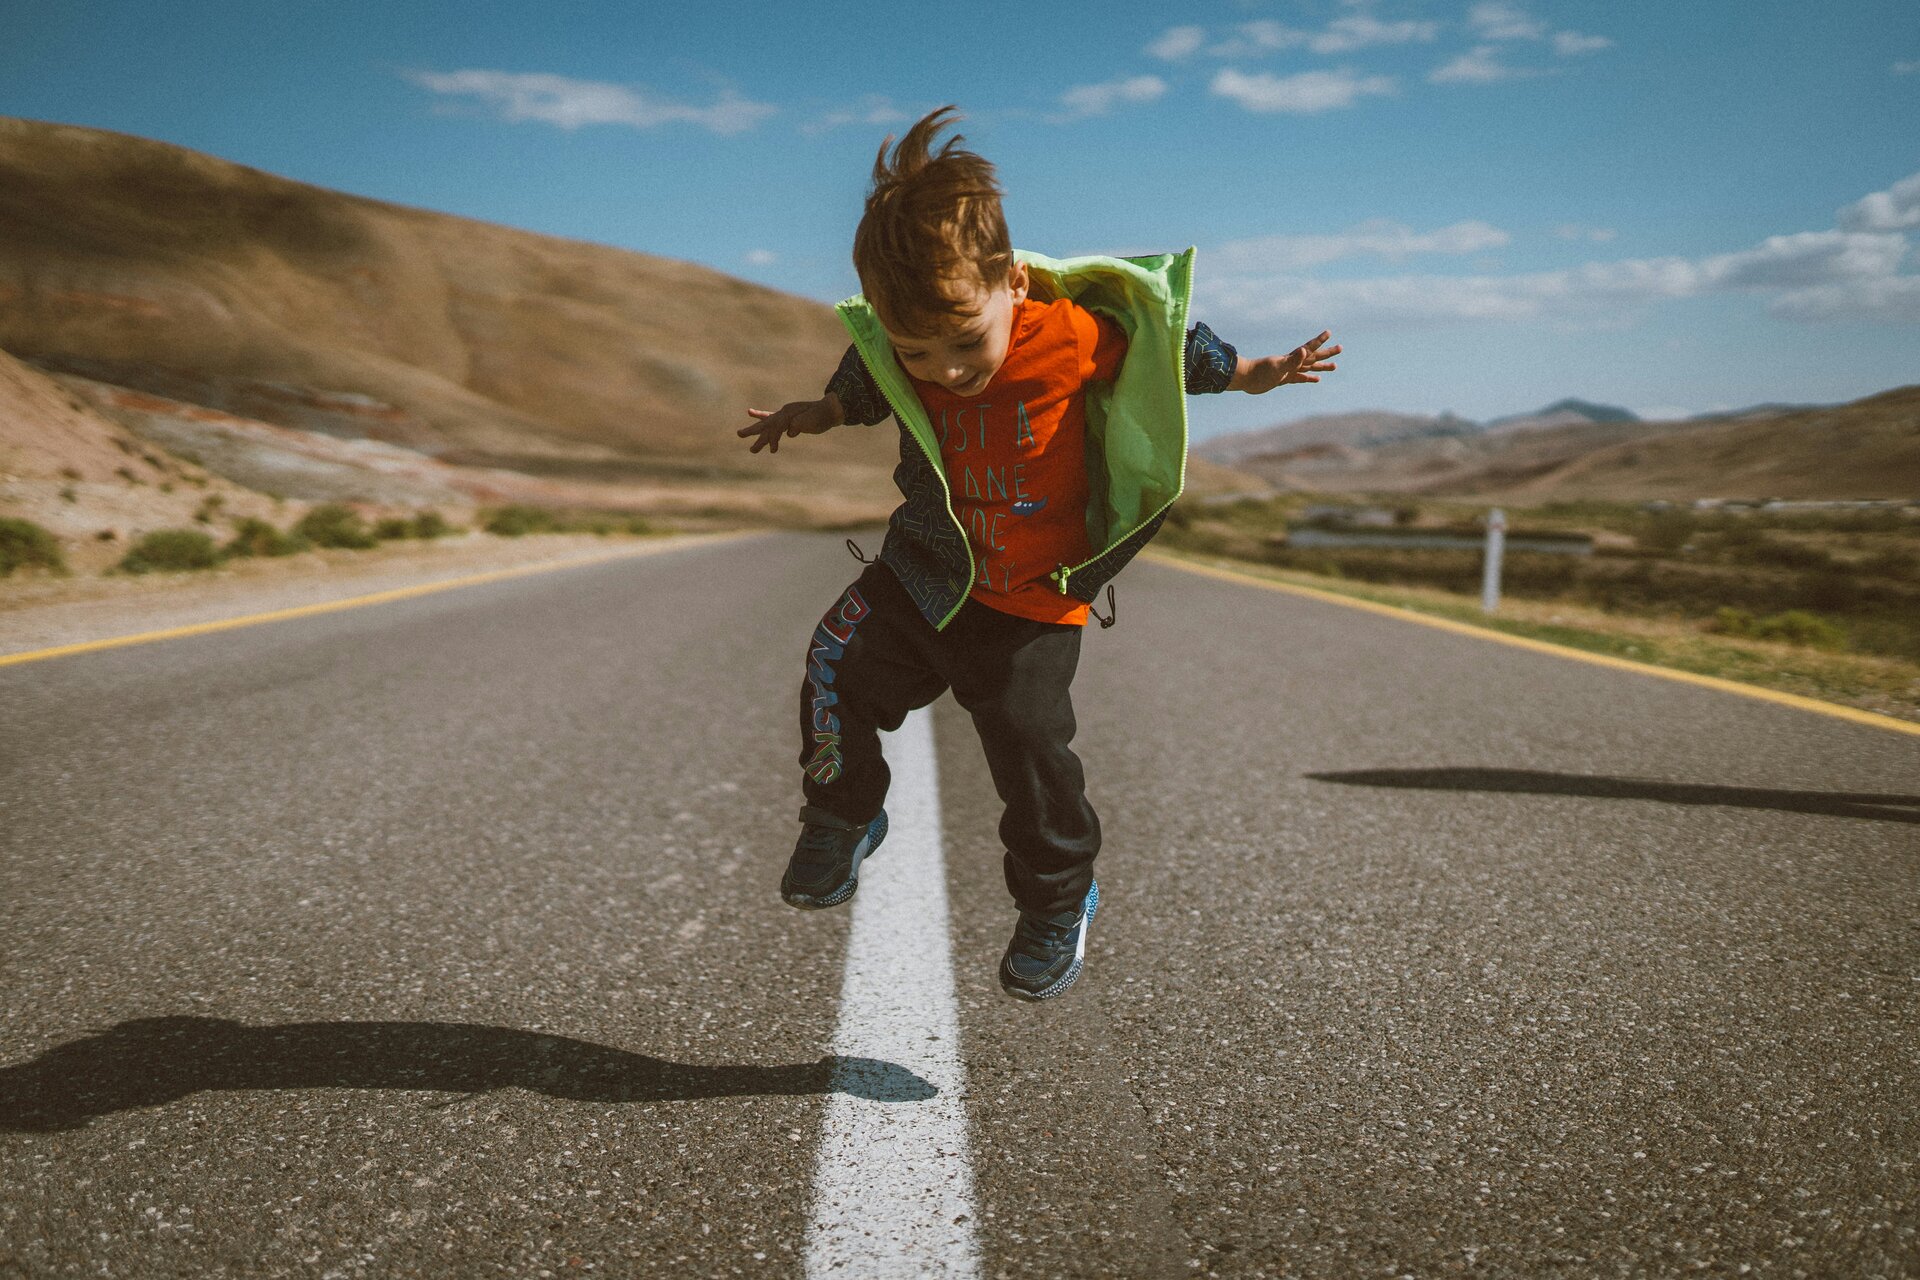 Das Bild zeigt einen Jungen, der auf einer Fahrbahn fröhlich auf dem Mittelstreifen springt | © Alvin Mahmudov/Unsplash